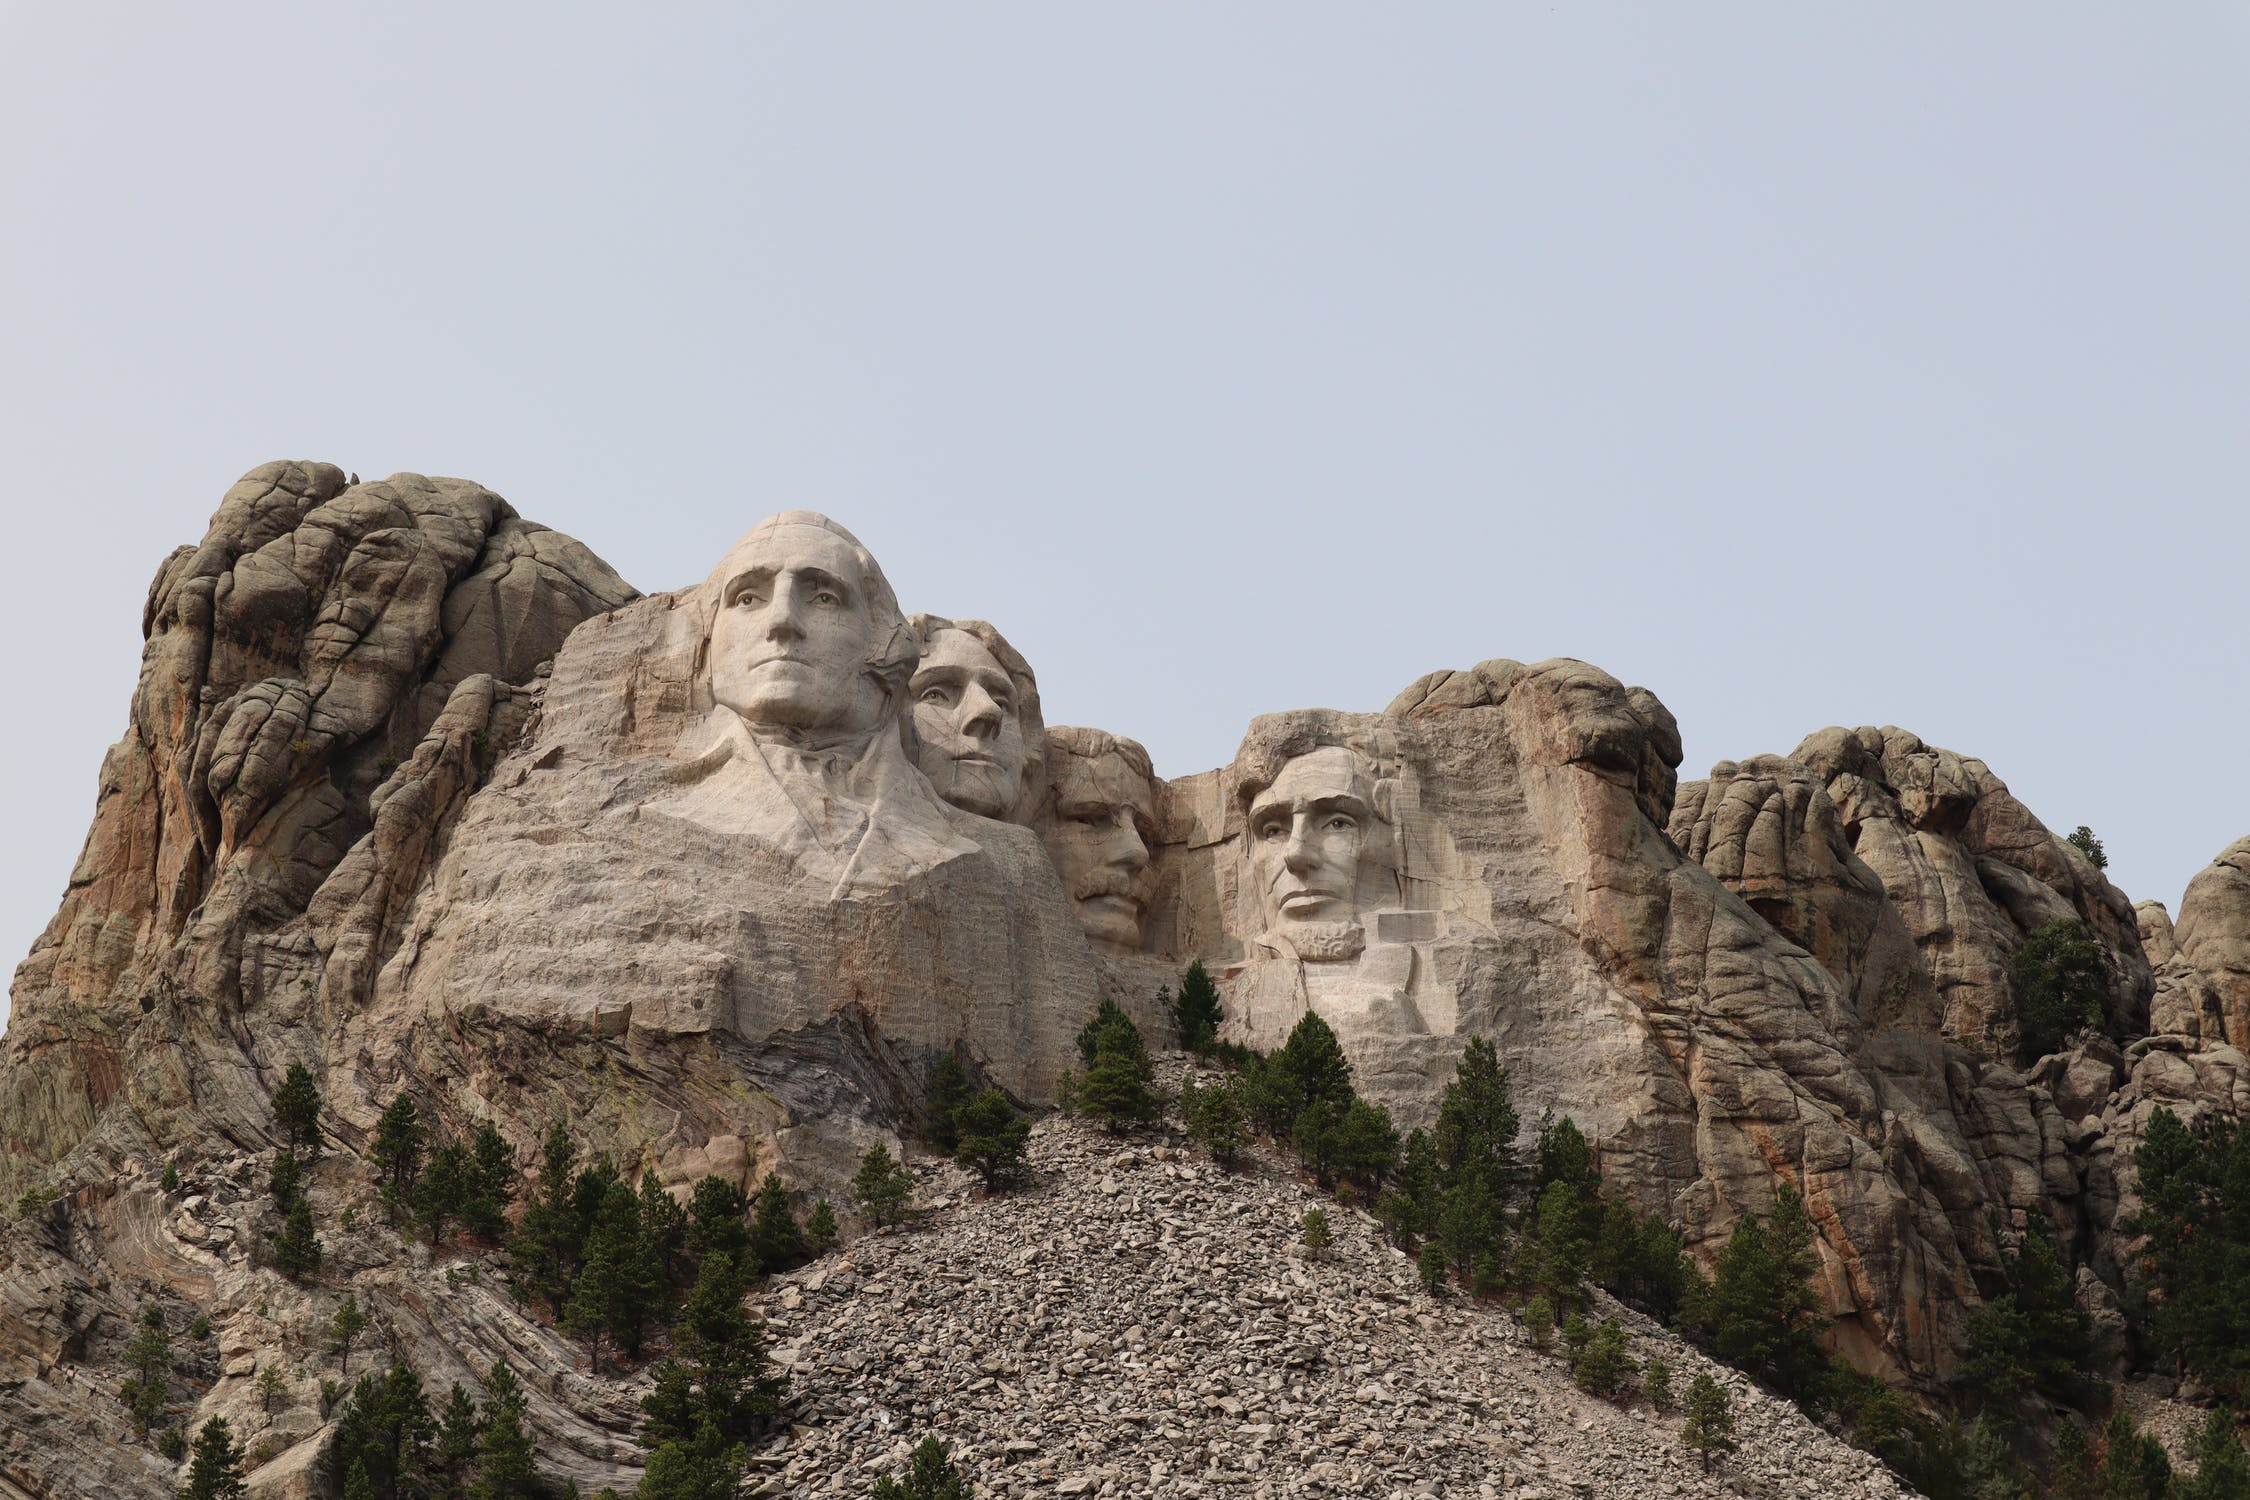 总统山 Mount Rushmore National Memorial